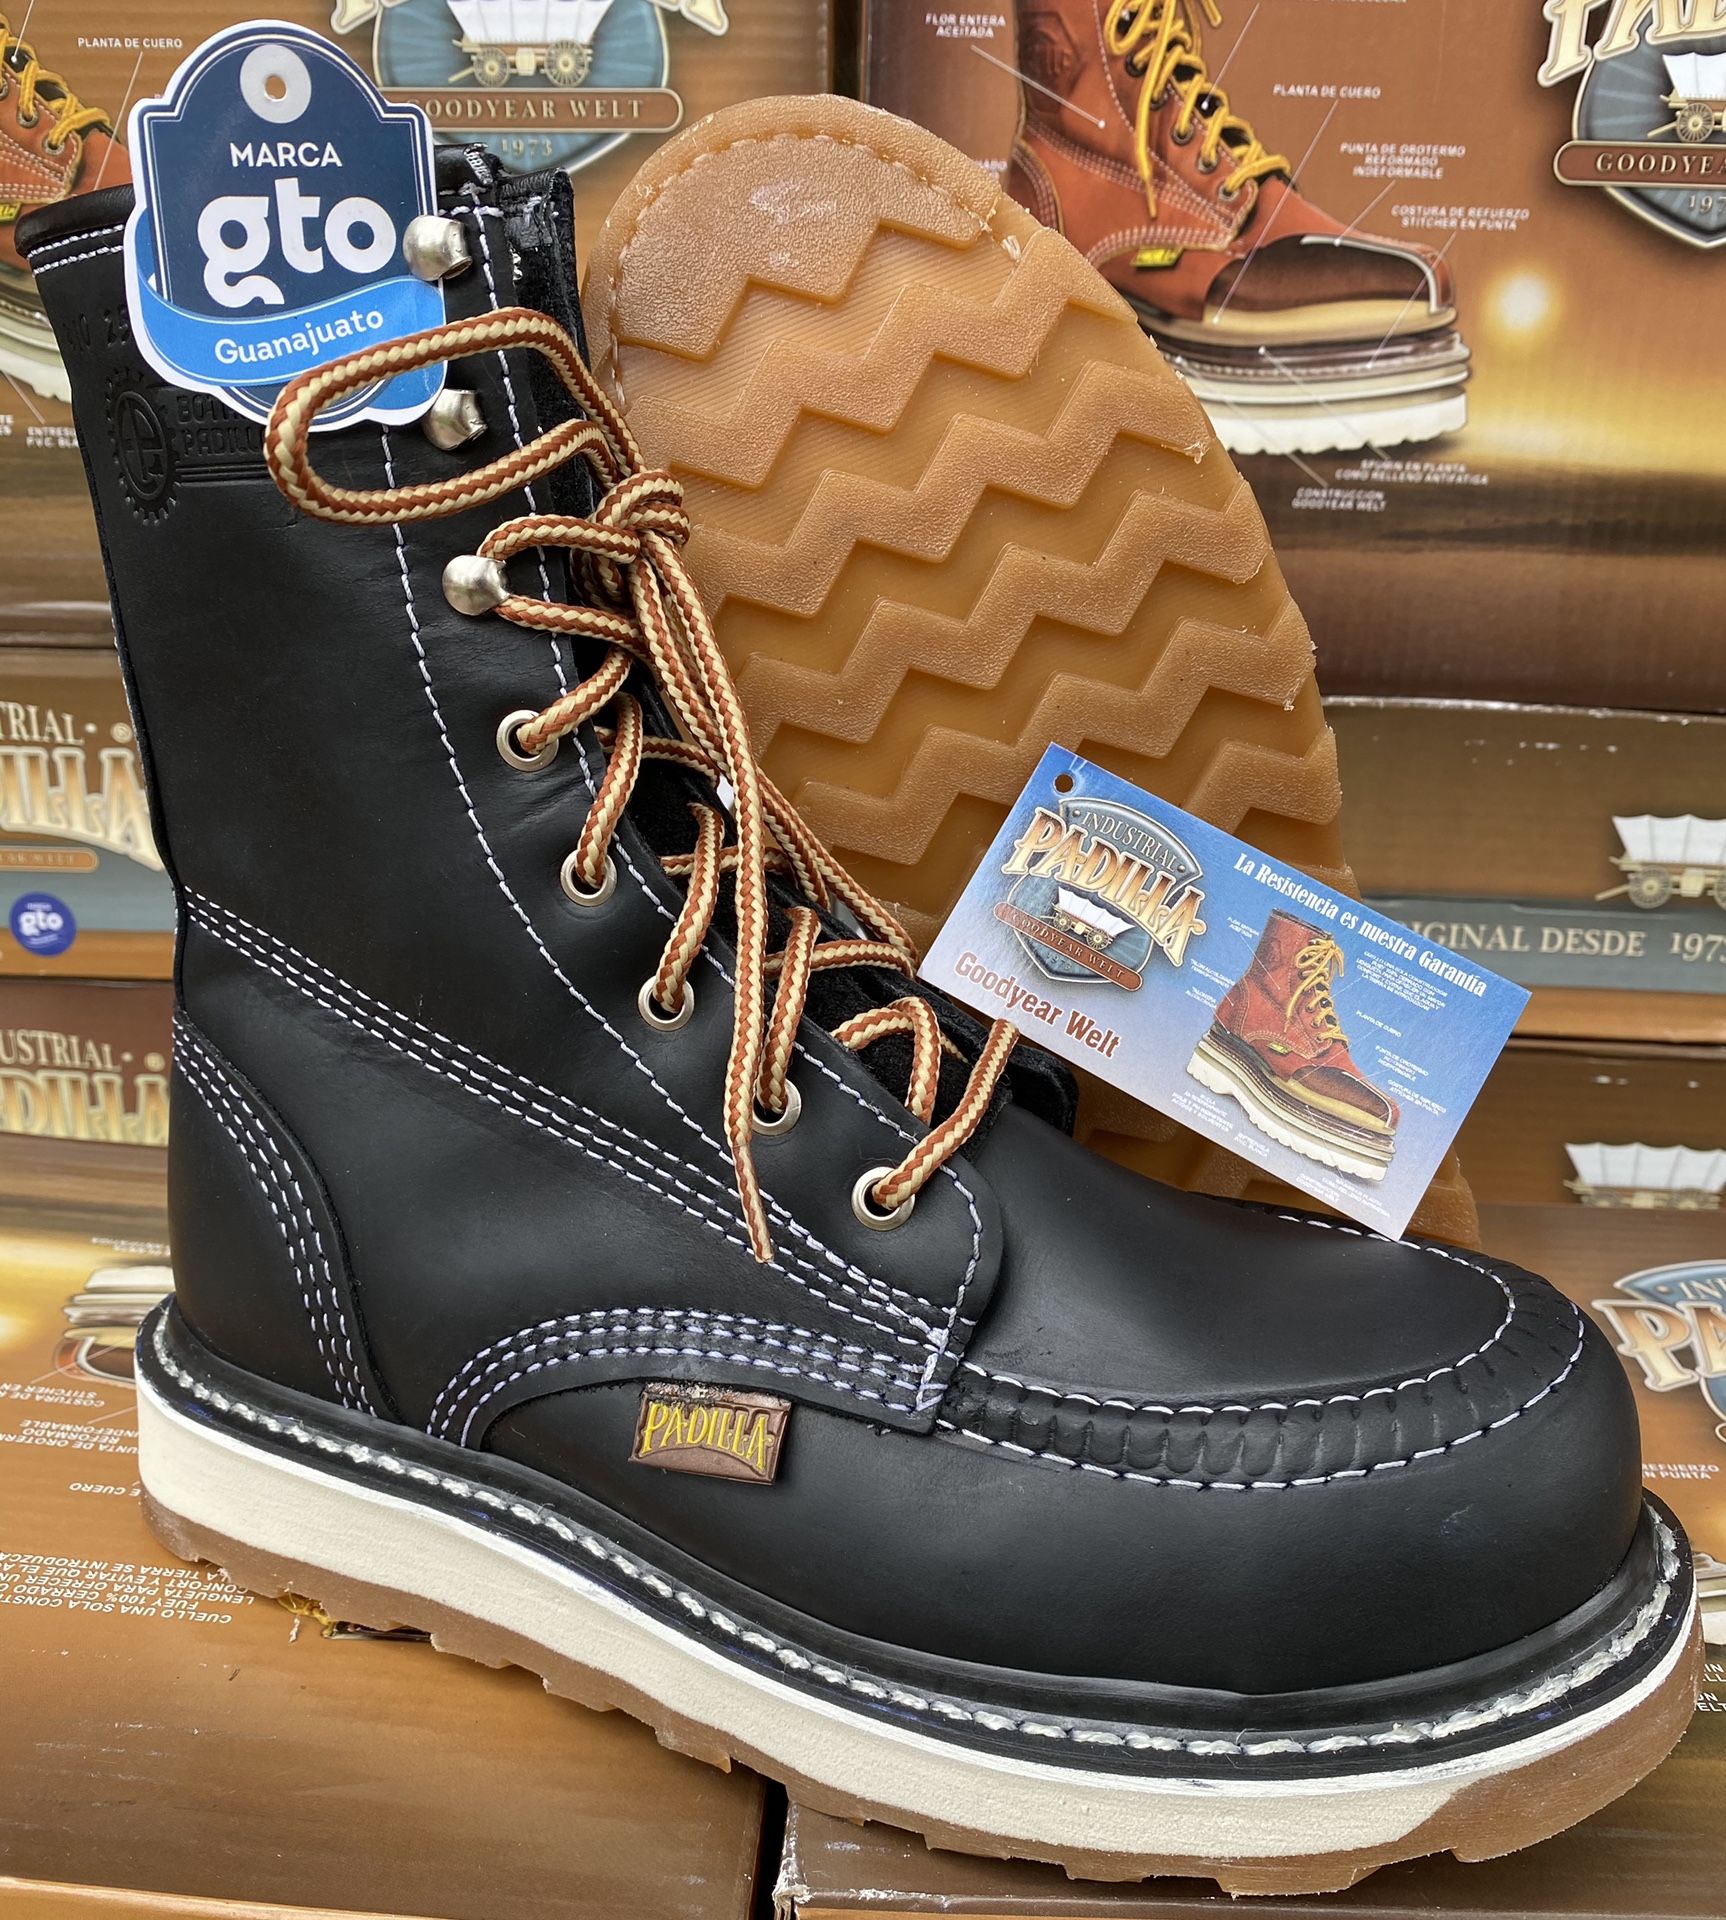 Work boots slip resistant waterproof real leather no china made in mexico botas de trabajo piel estamos en sylmar